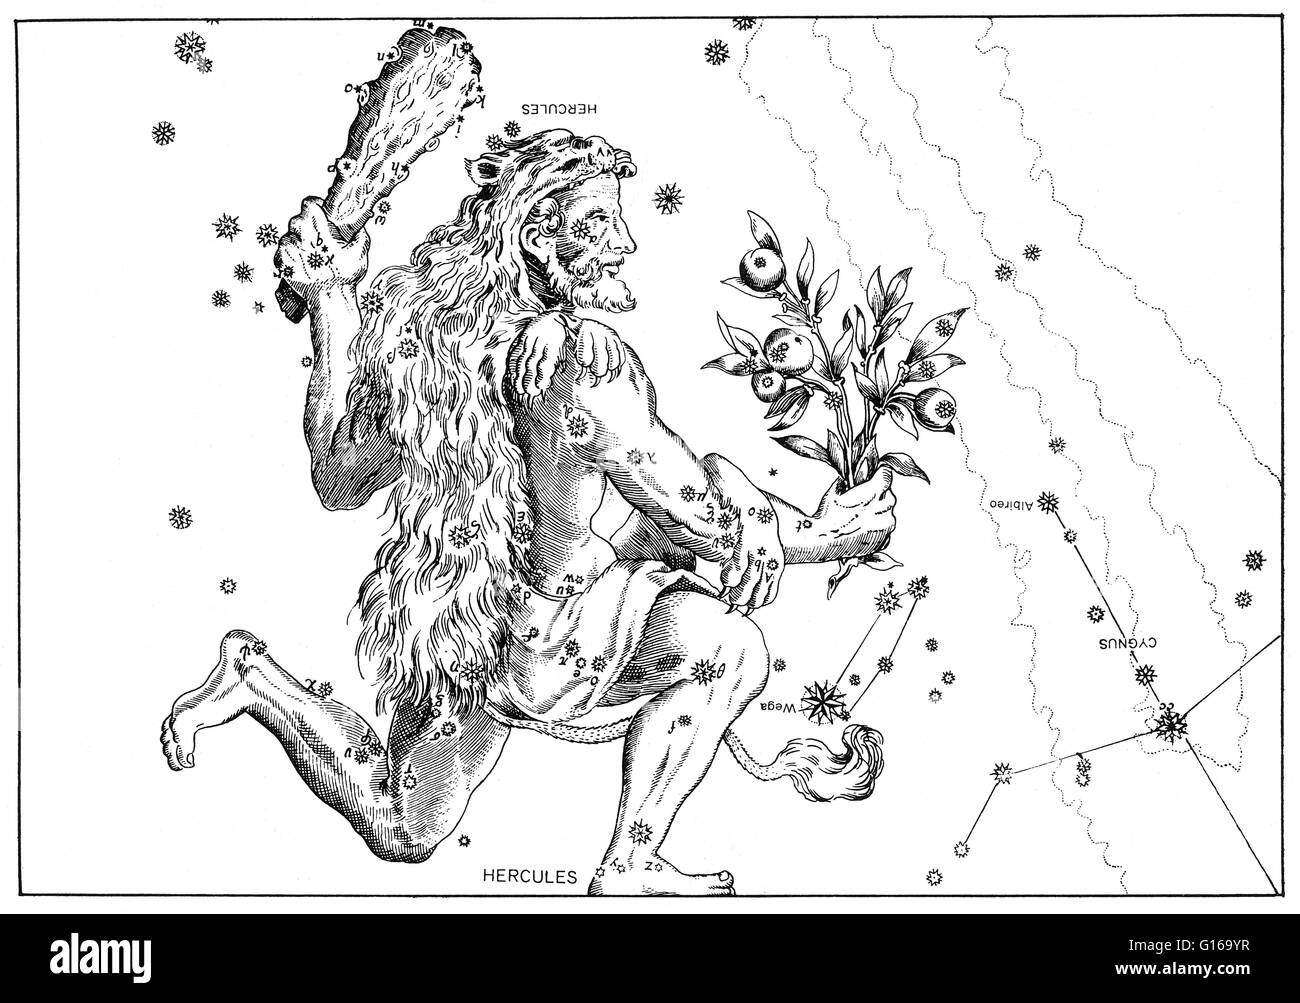 Hercules constelación de Johann Bayer Uranometria Omnium Asterismorum star atlas, 1603. Hercules es una constelación denominada después de Hércules, el héroe mitológico Romano adaptado del héroe griego Heracles. Hercules es uno de la lista de 48 constelaciones Foto de stock